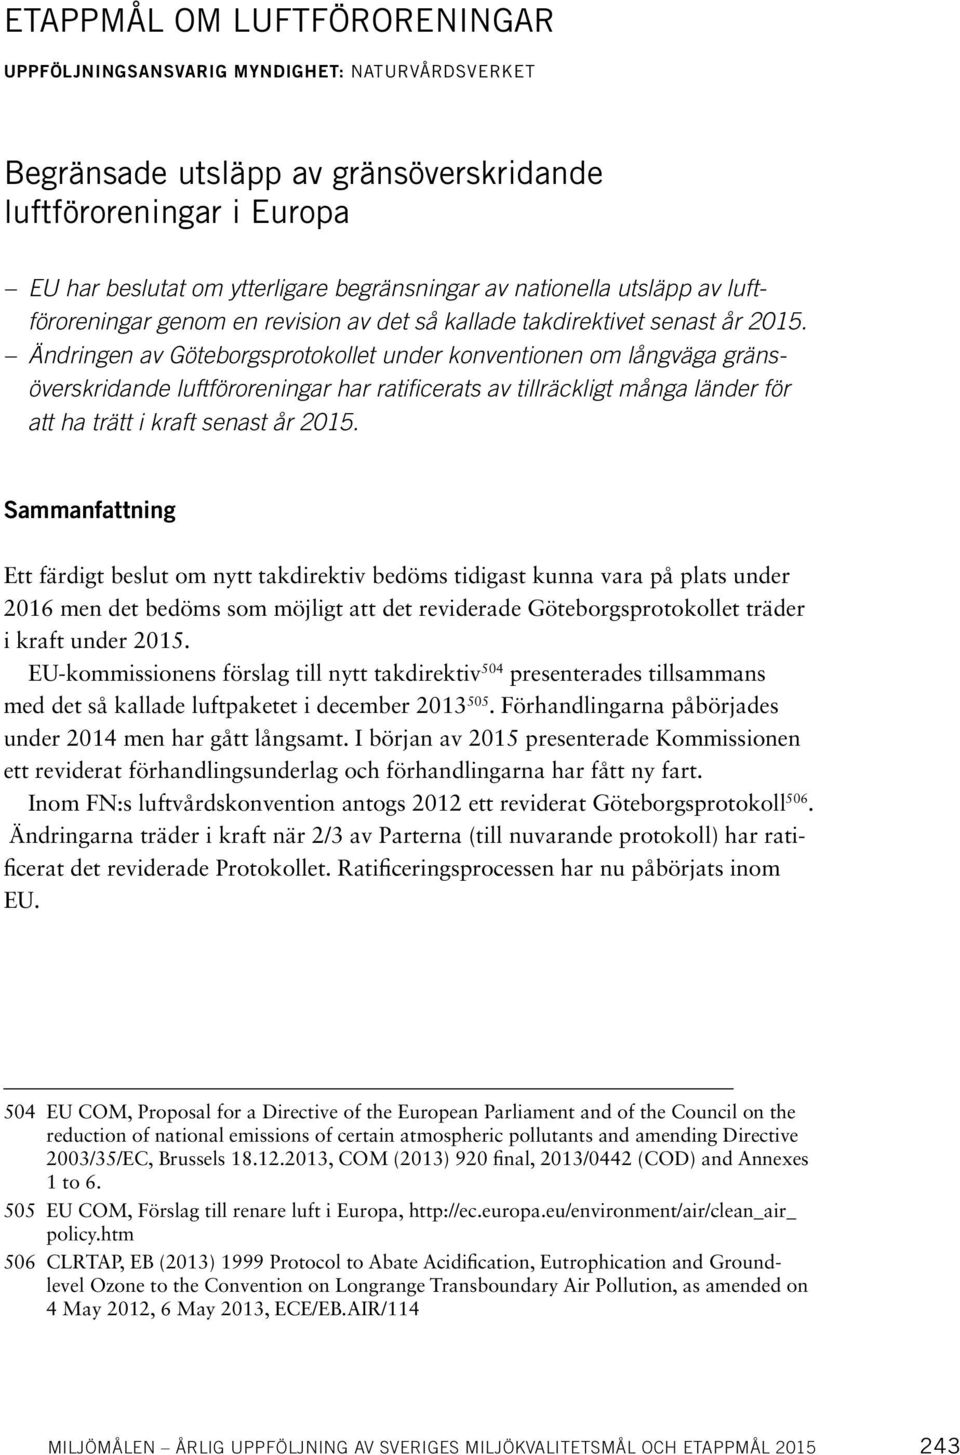 Ändringen av Göteborgsprotokollet under konventionen om långväga gränsöverskridande luftföroreningar har ratificerats av tillräckligt många länder för att ha trätt i kraft senast år 2015.